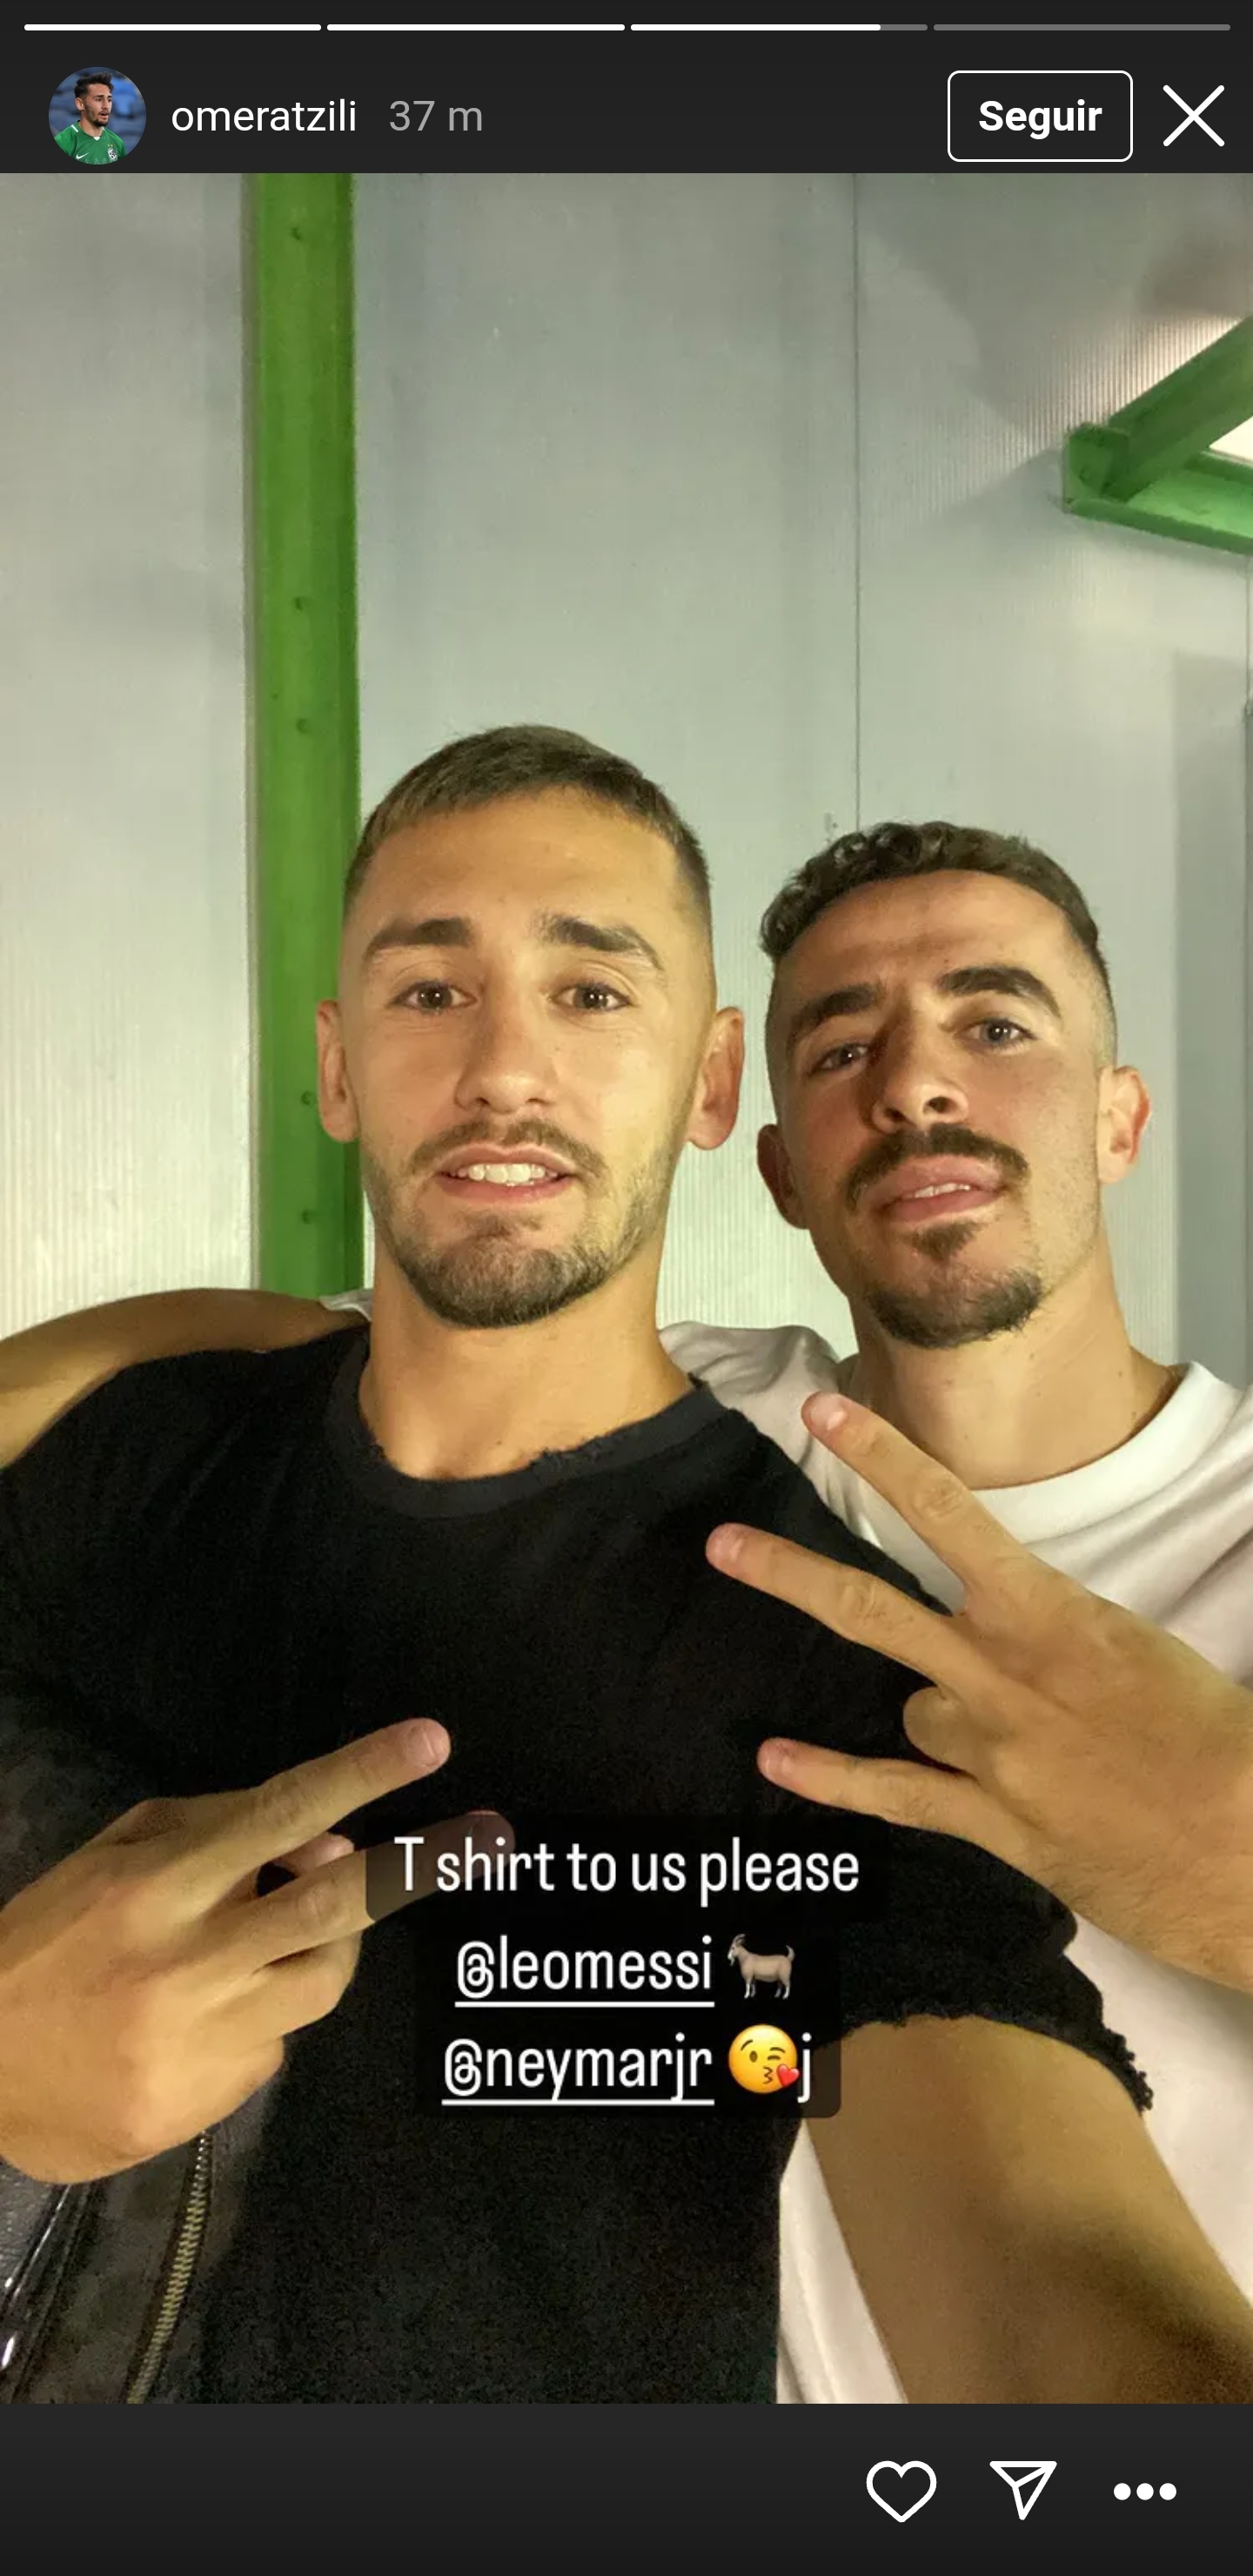 Dos jugadores del Maccabi Haifa ya piden a Messi y Neymar su camiseta!